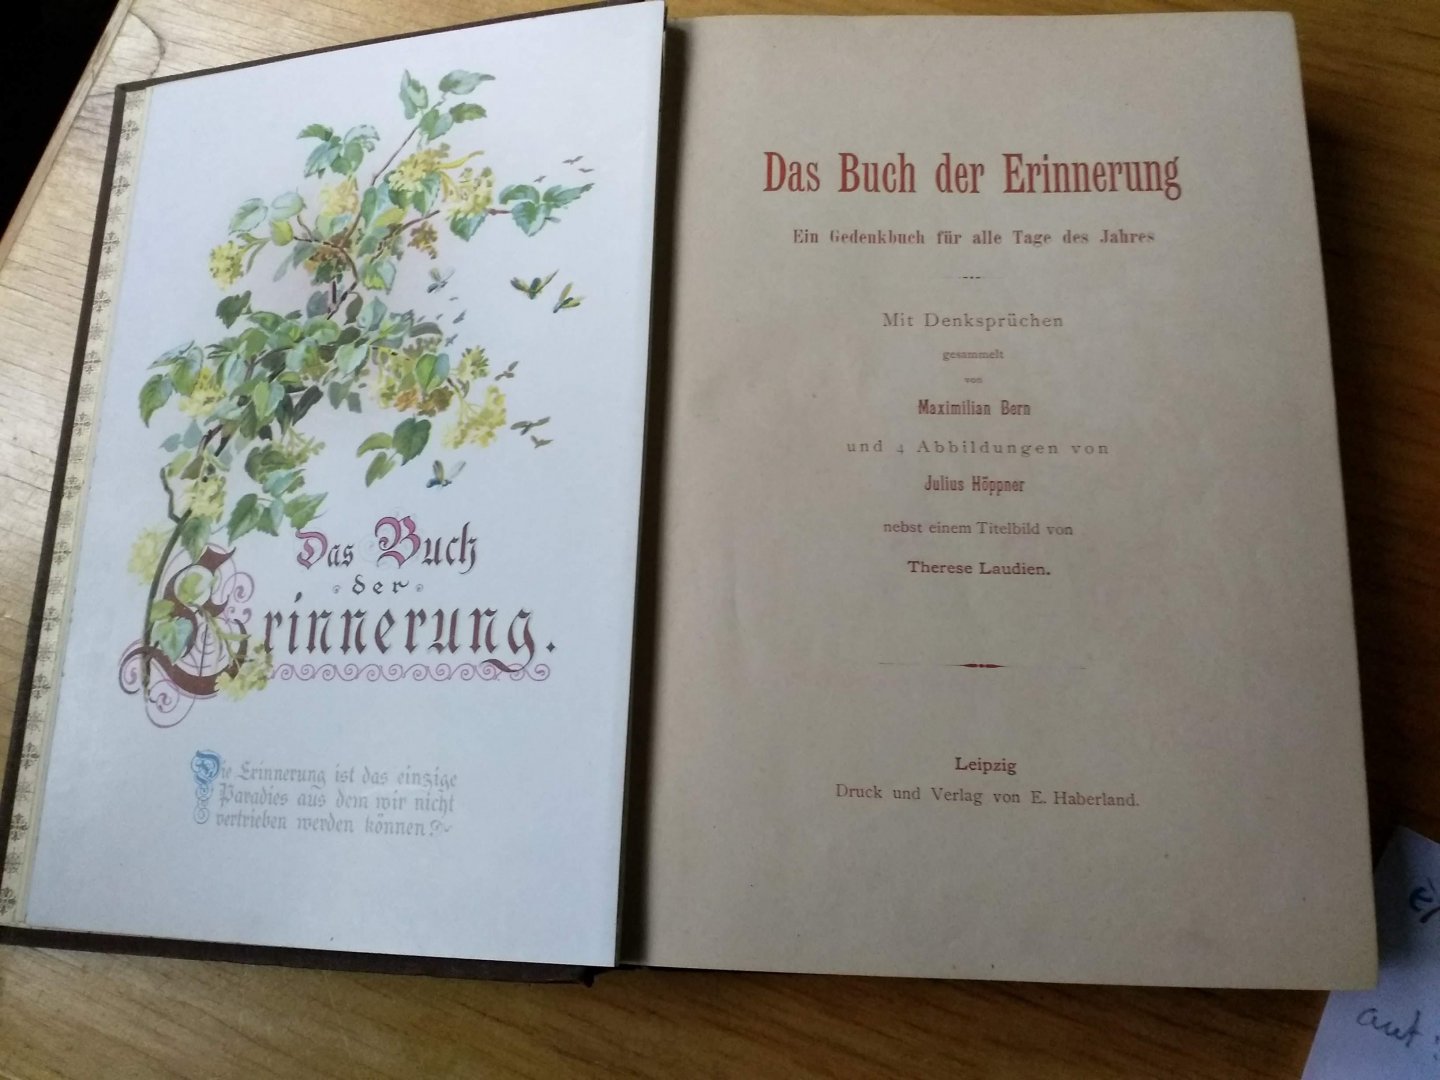 Bern, Maximilian (sammler)  und   Julius Hoppner (abbildungen) - Das Buch der Erinnerung (Ein Gedenkbuch für alle Tage de Jahres) nebst einem Titelbild von Therese Laudien